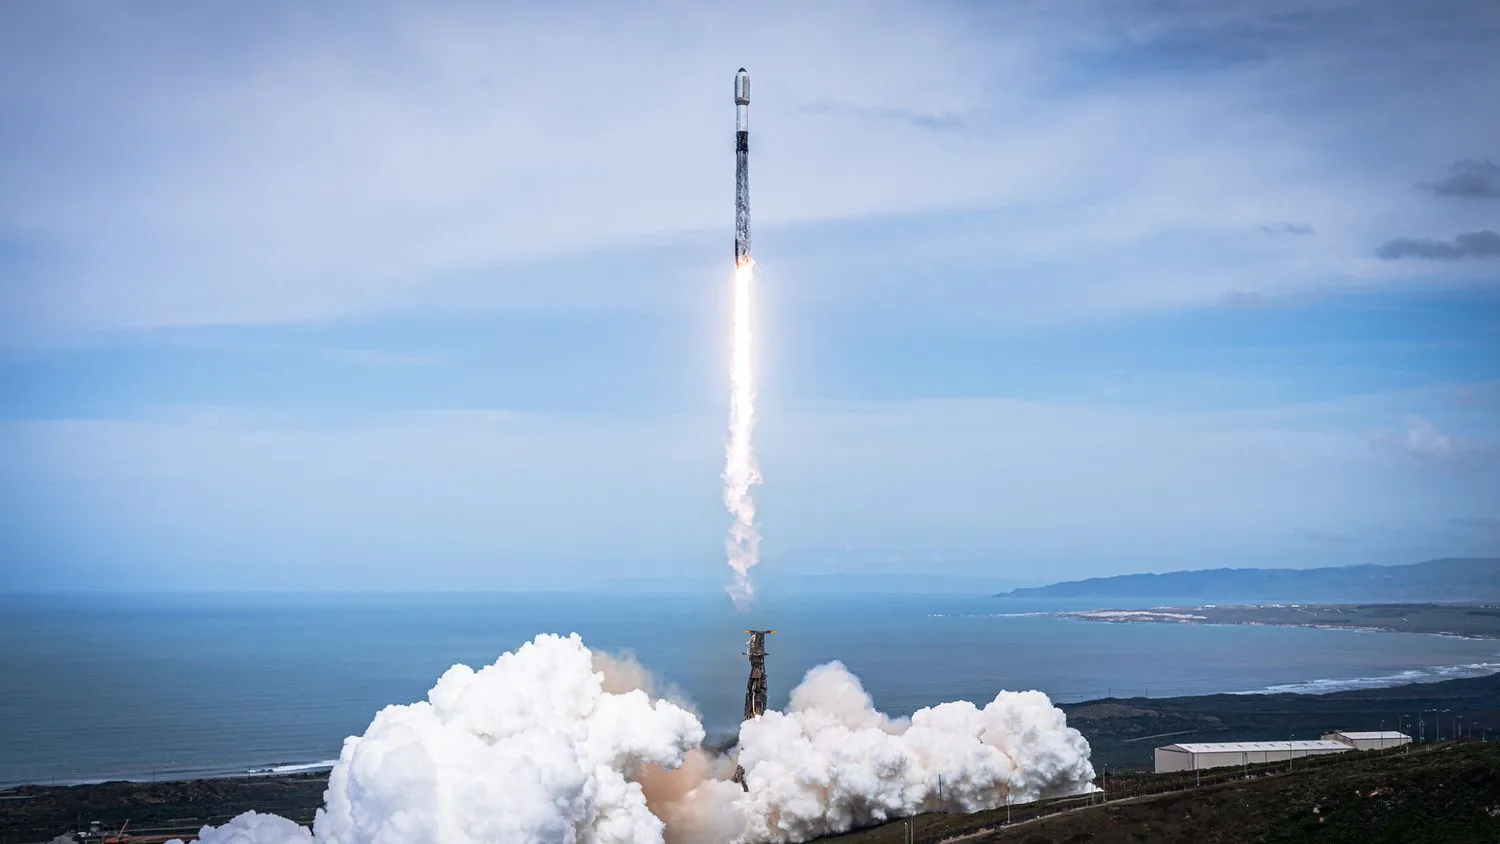 eine schwarz-weiße Spacex Falcon 9 Rakete startet in einen wolkenverhangenen blauen Himmel mit dem Meer im Hintergrund